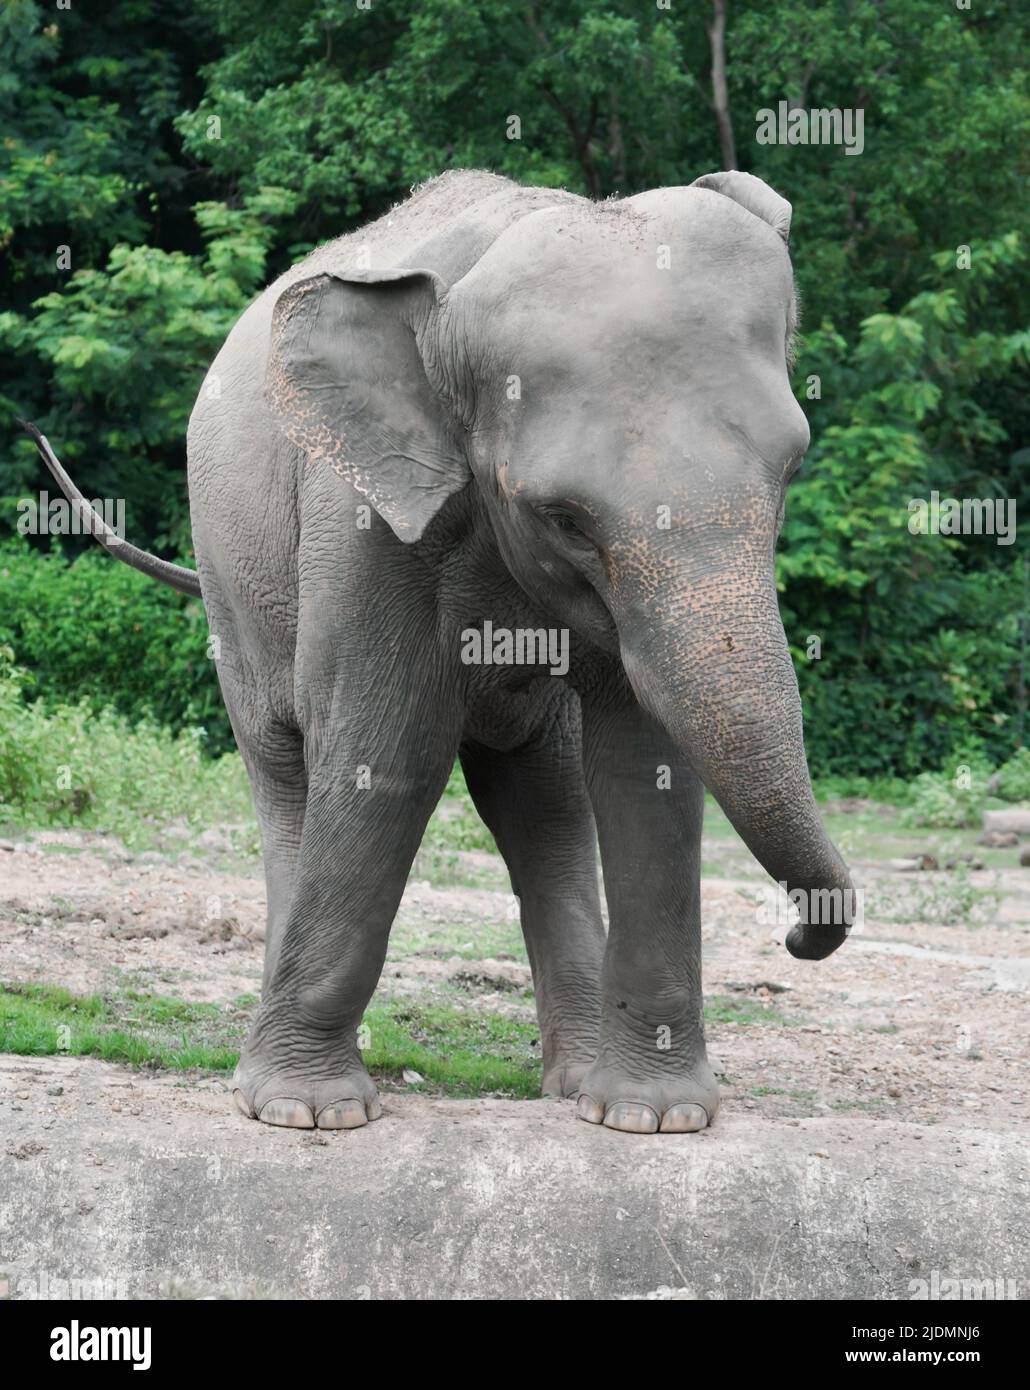 divertido elefante asiático joven en el zoológico Foto de stock